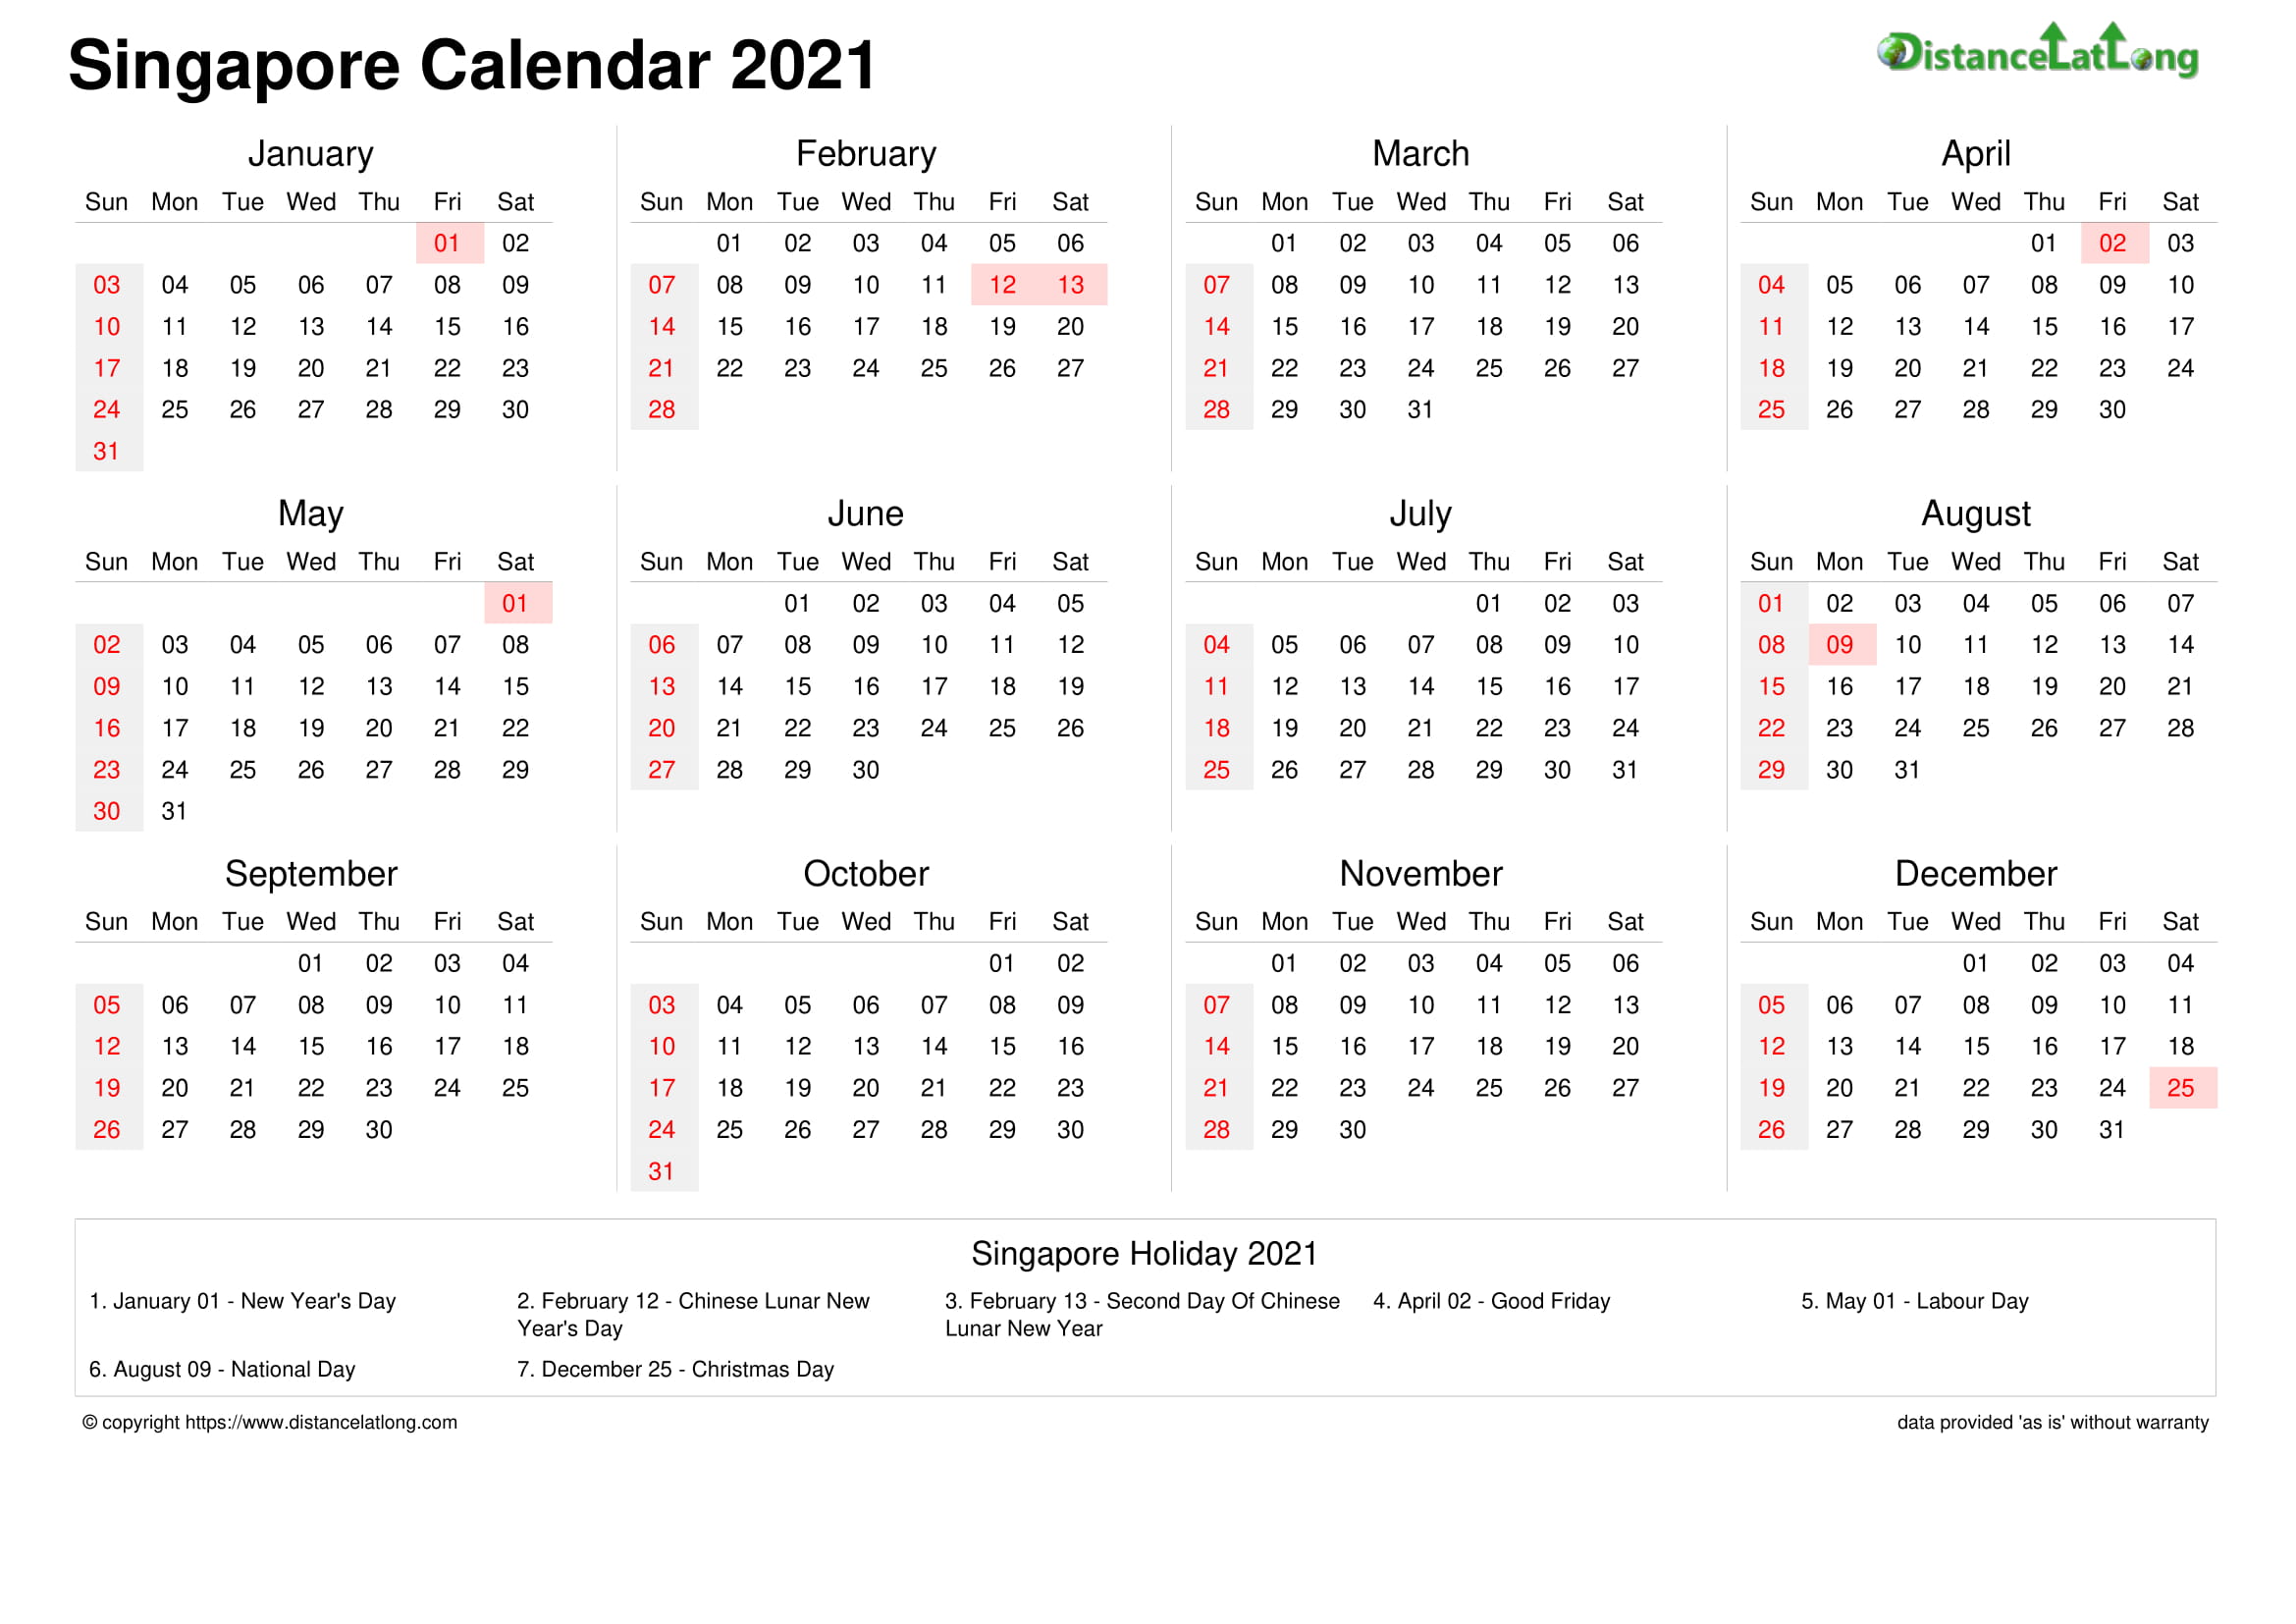 Singapore Holiday Calendar 2021 Doc Templates Distancelatlong Com1